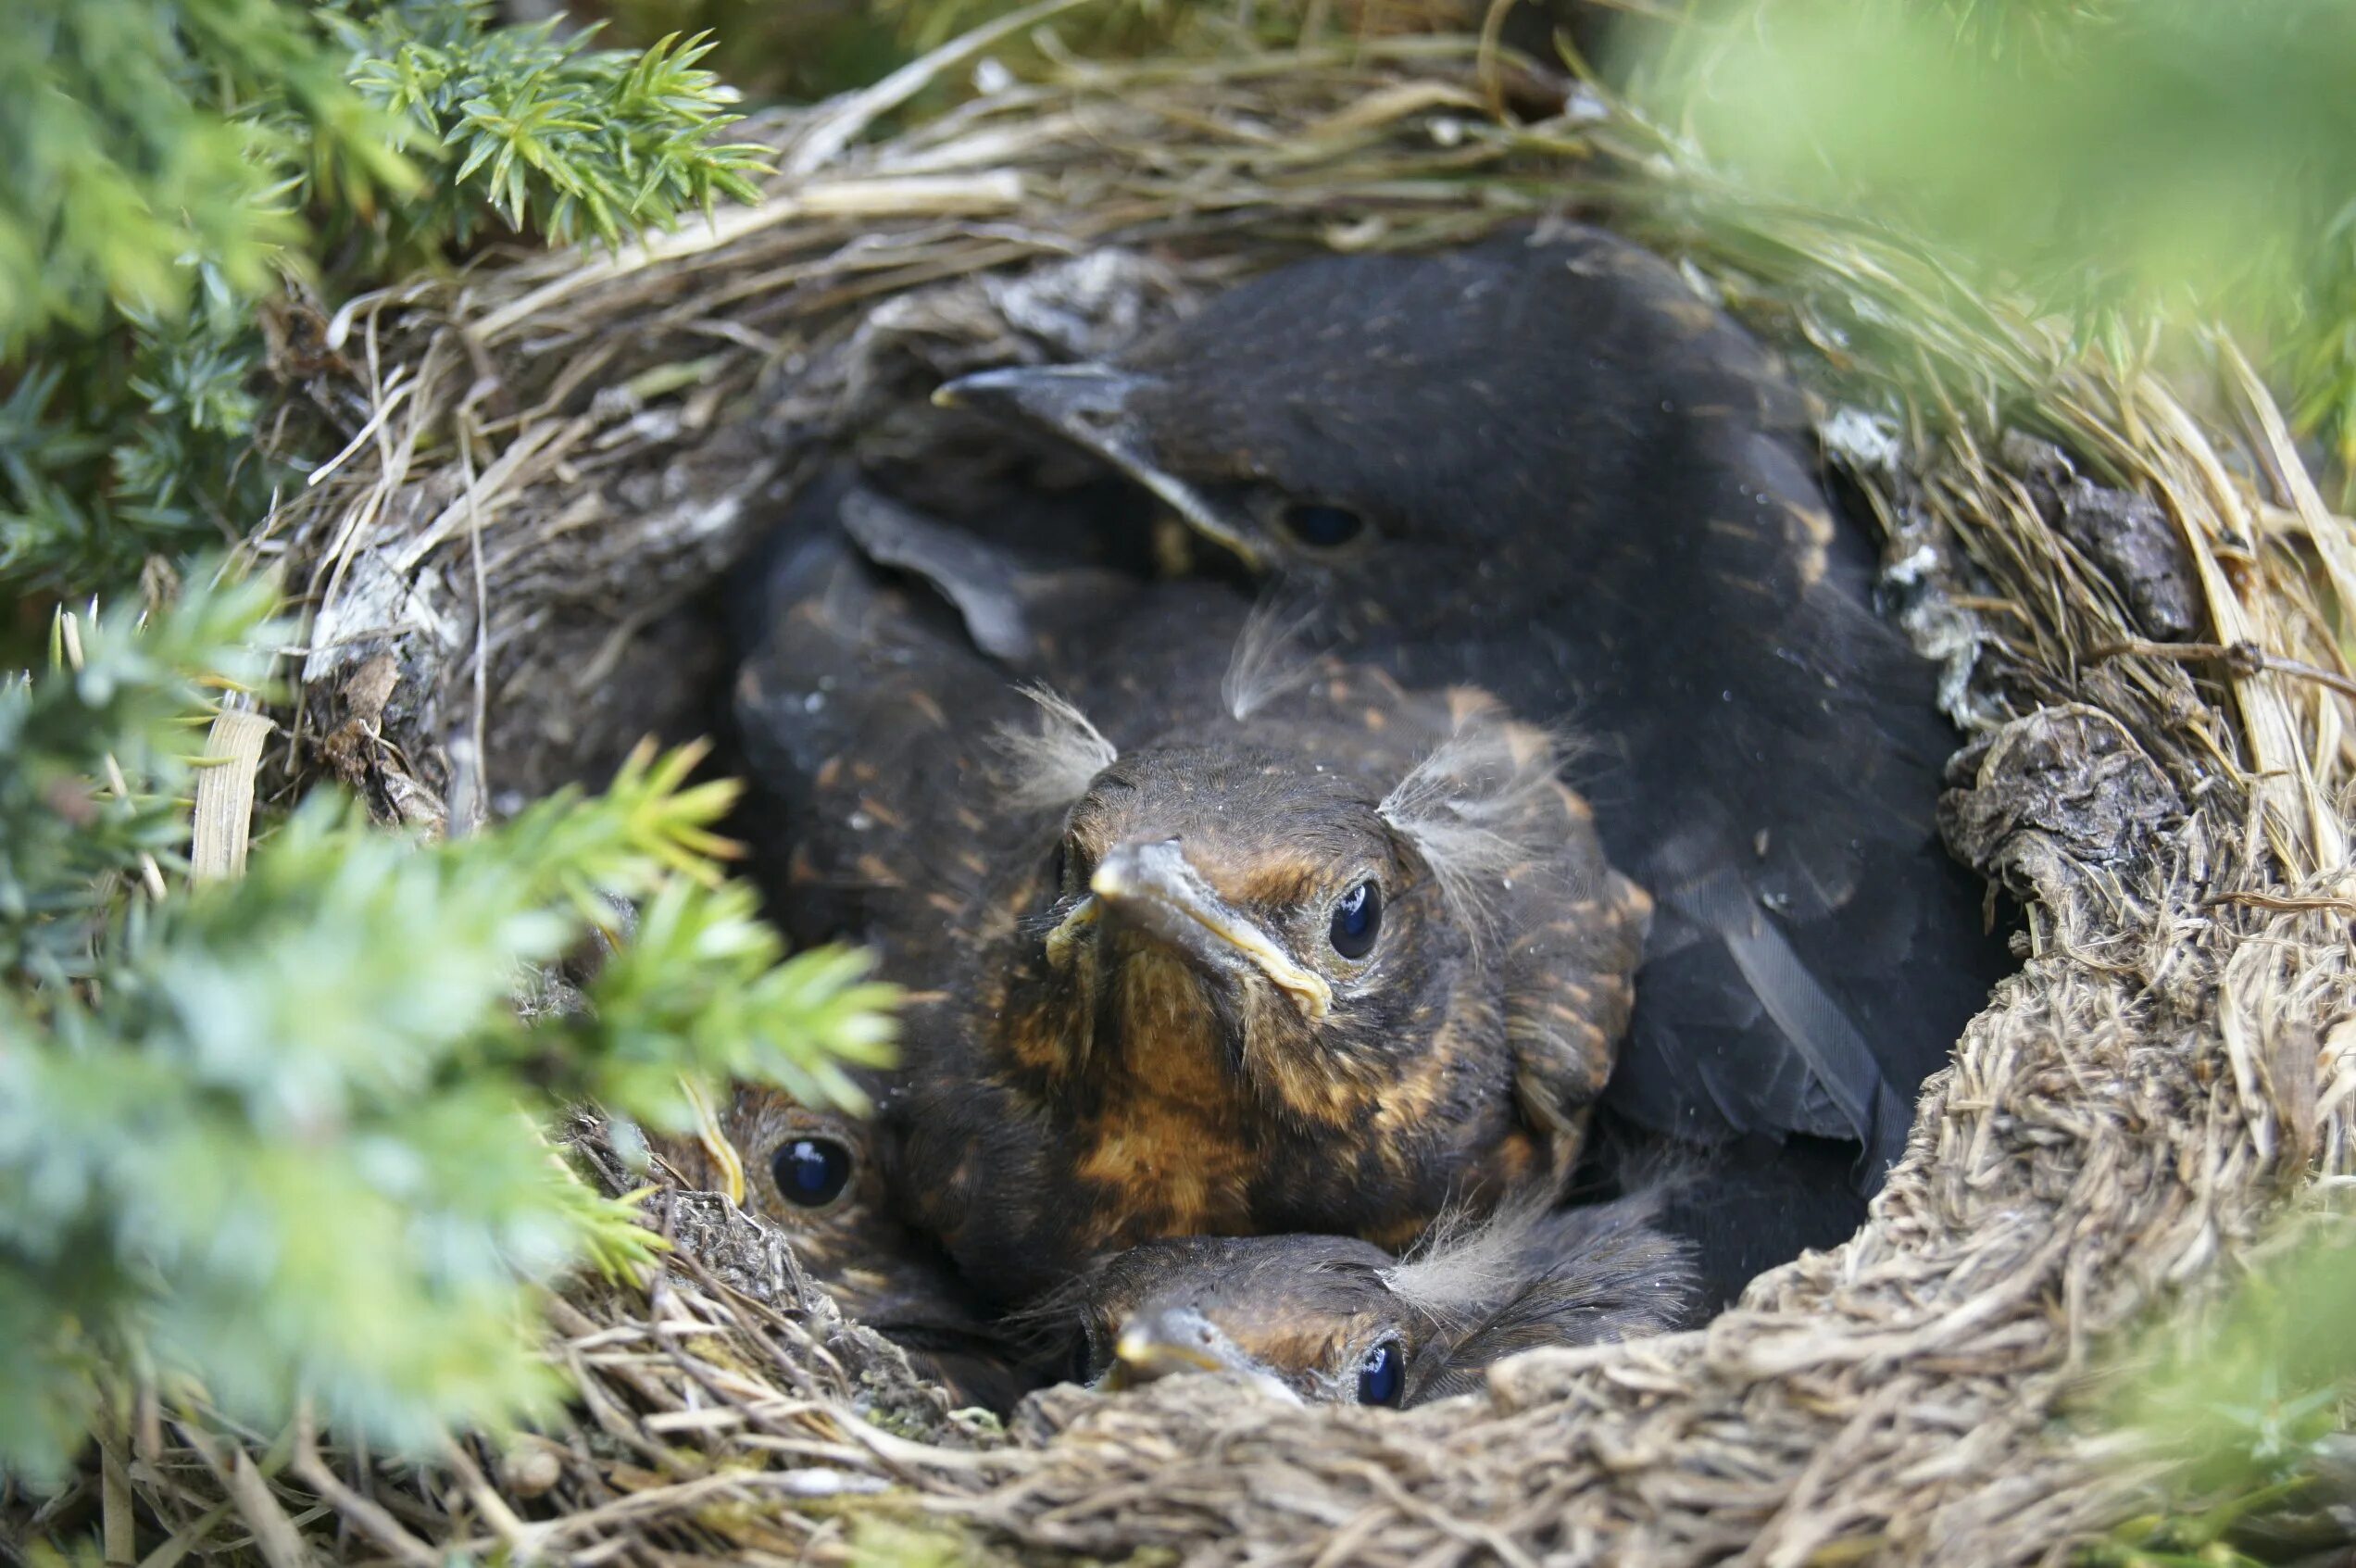 Птенец улетает из гнезда. Гнездо воробья. Счастливое гнездо с птенцами. Улетели птенчики в свои гнезда.